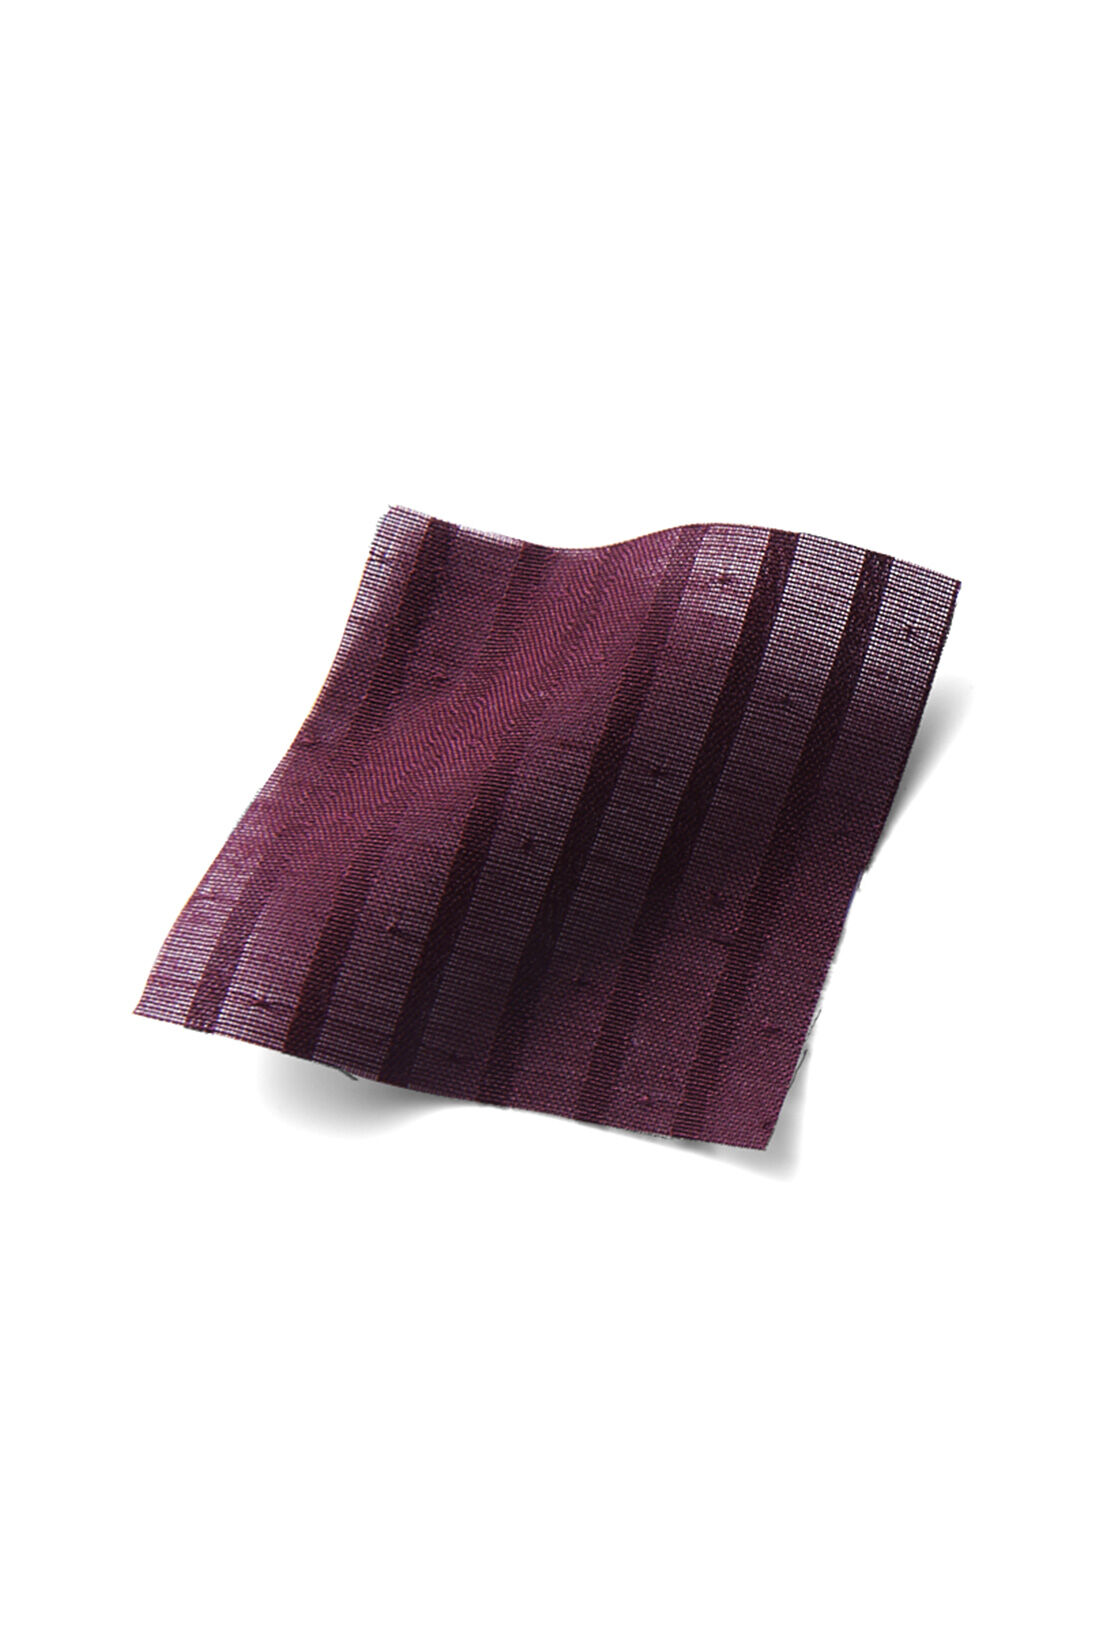 Real Stock|IEDIT[イディット]　ストライプの織り柄素材のアンティーク風レース遣いブラウス〈ボルドーレッド〉|ストライプの織り柄が凝っている布はく素材。上品さにきちんと感もプラス。